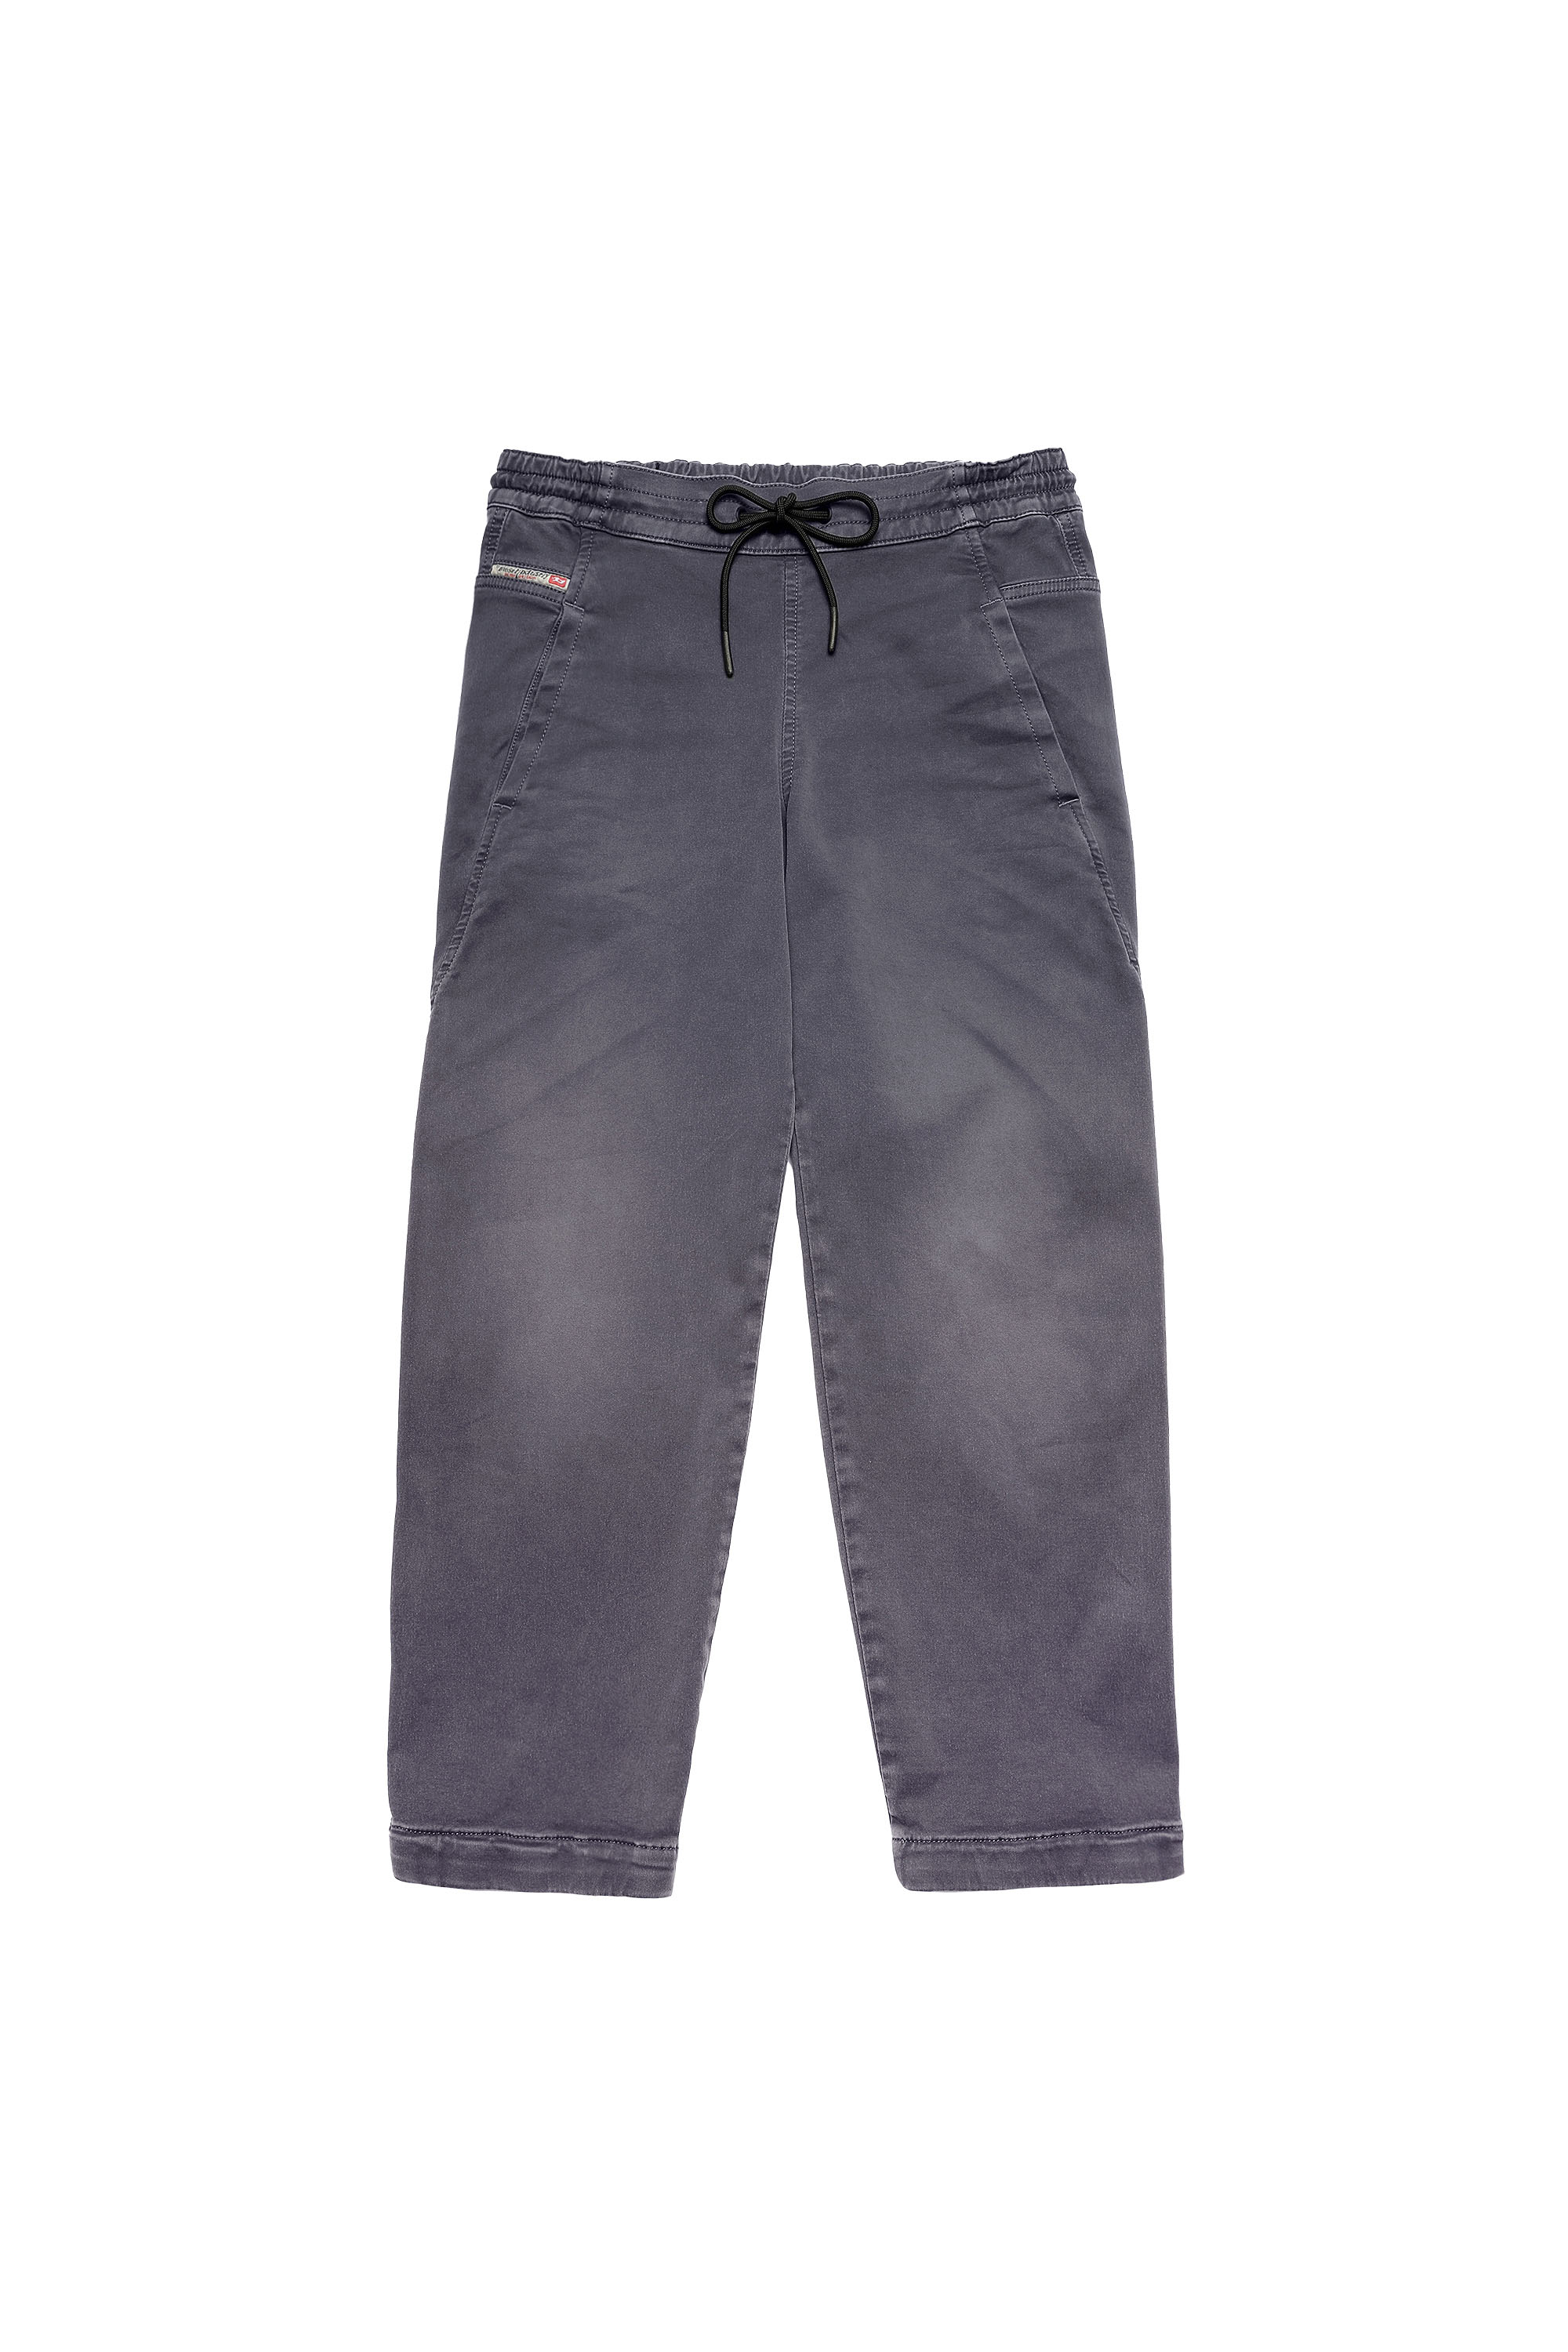 Diesel - Krailey Boyfriend JoggJeans® Z670M, Dark grey - Image 6